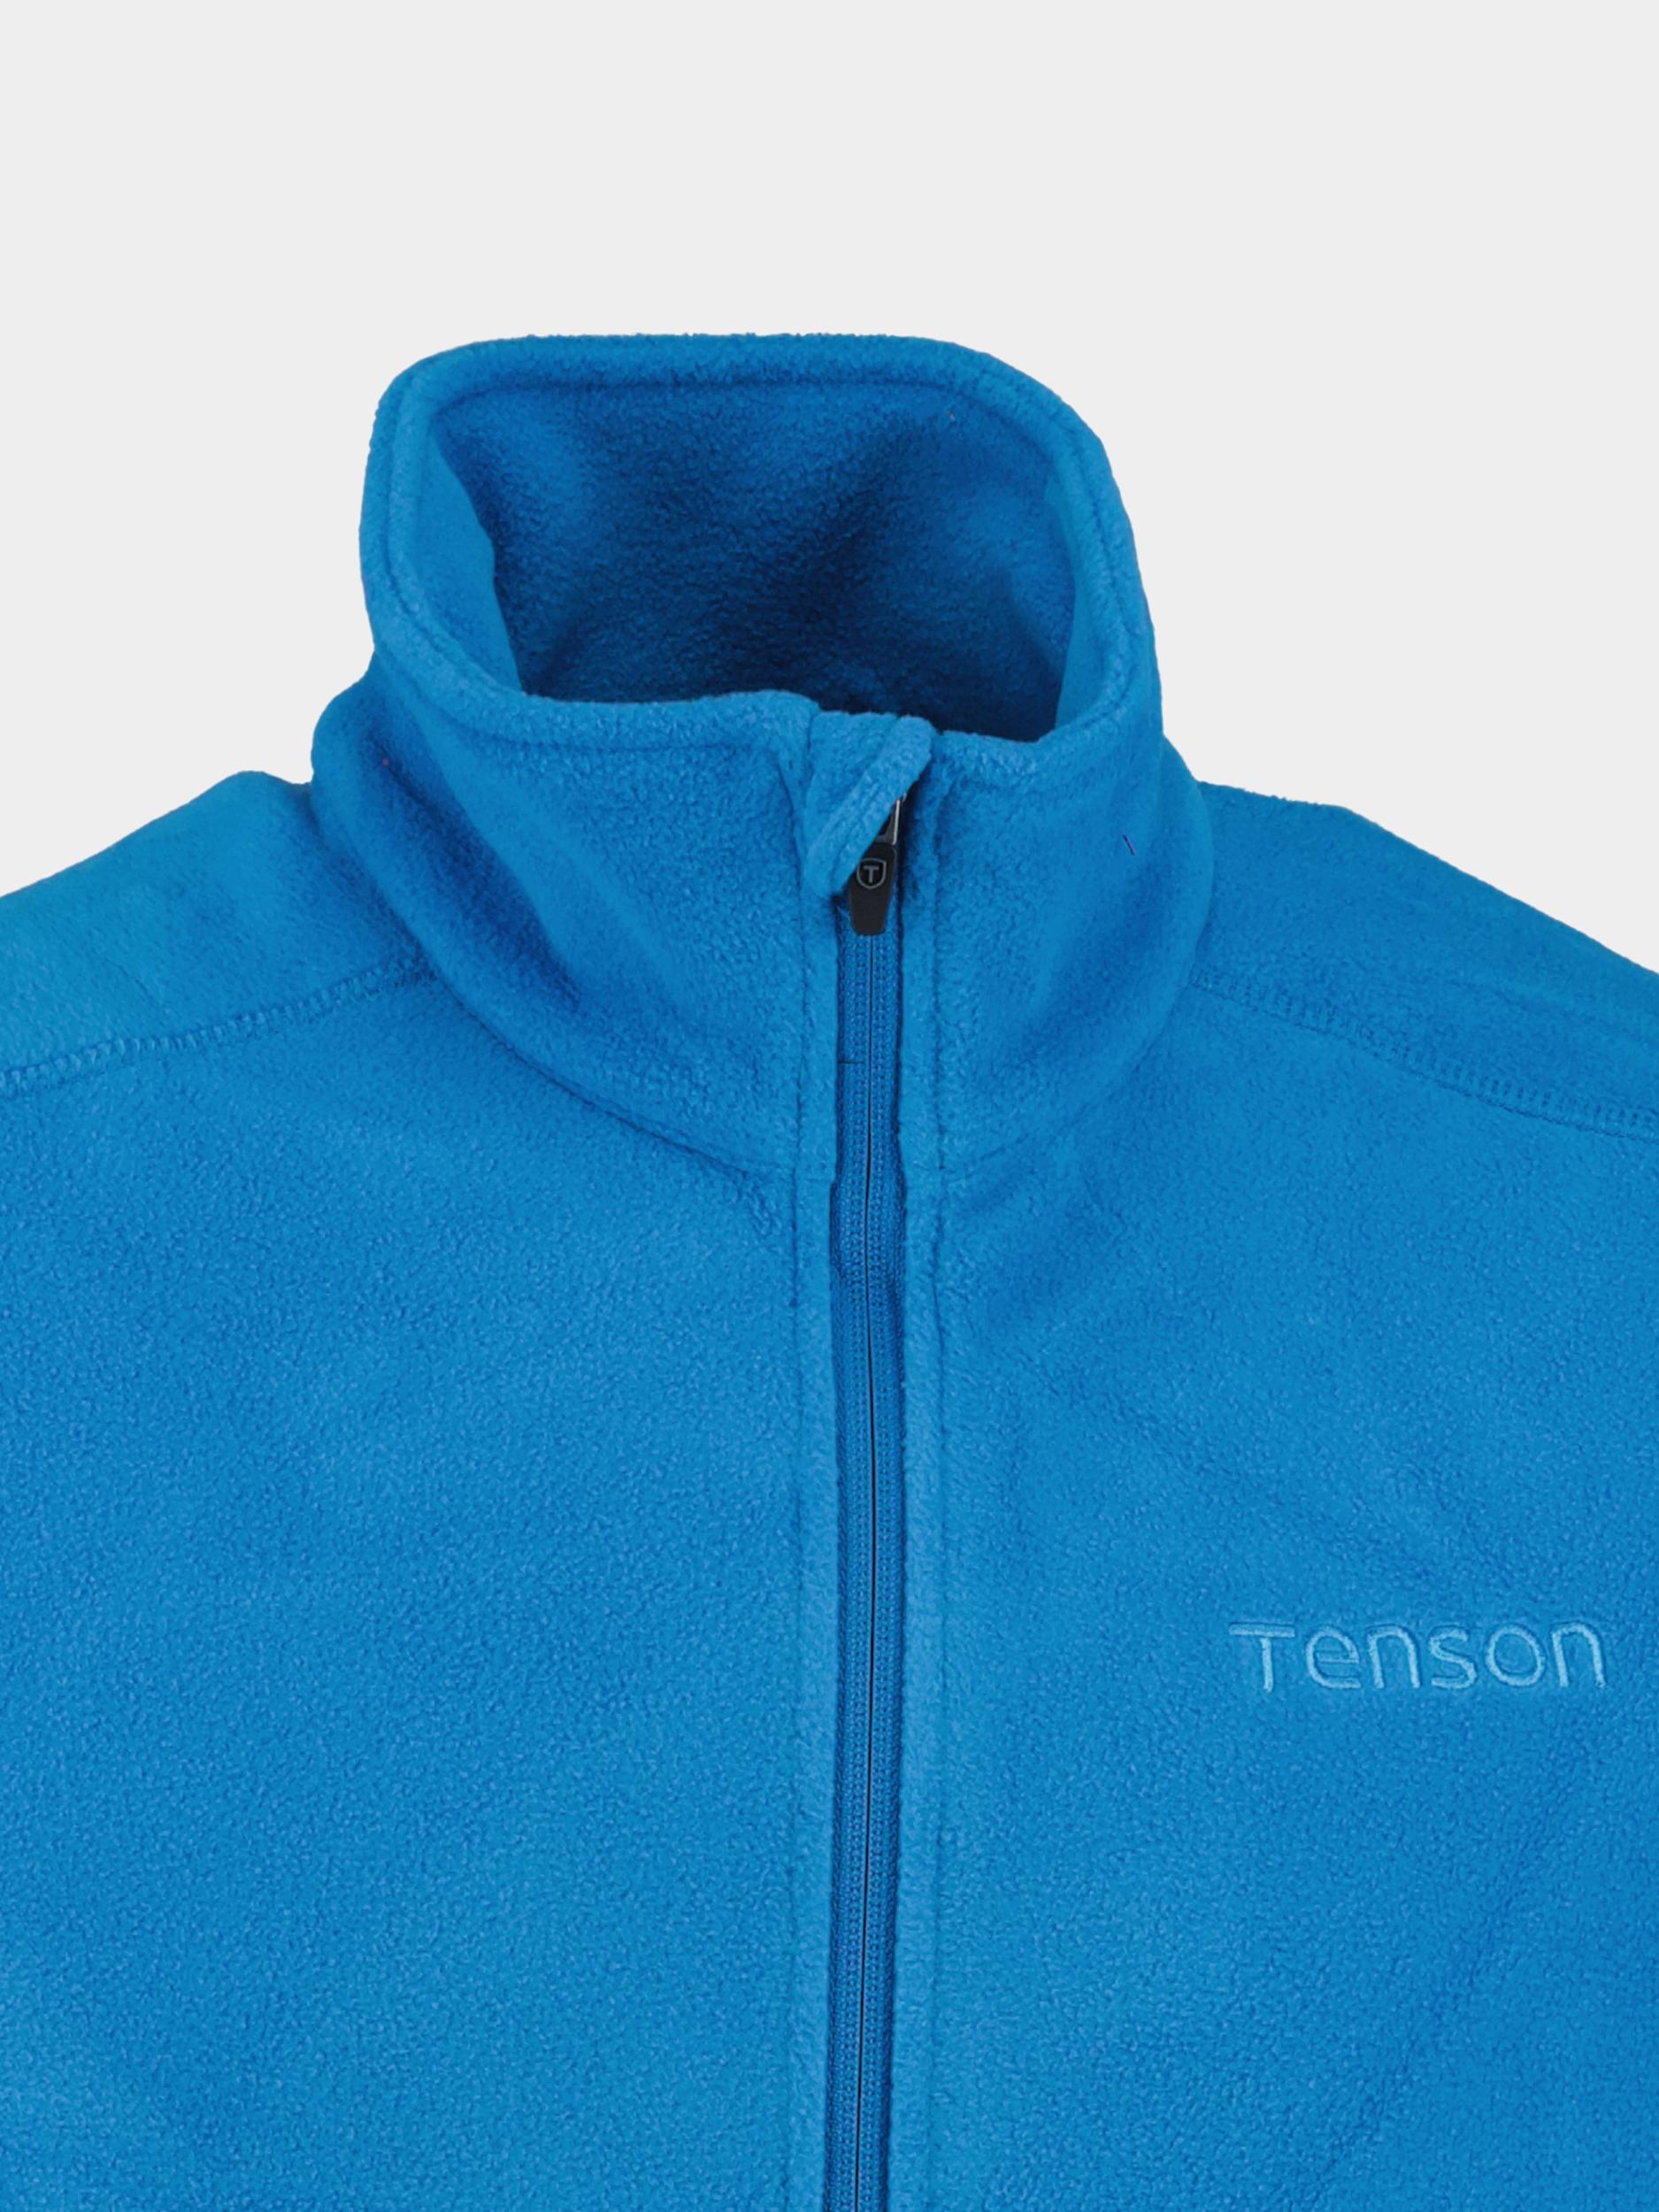 Tenson Fleece Vest Blauw Miracle 5016752/548